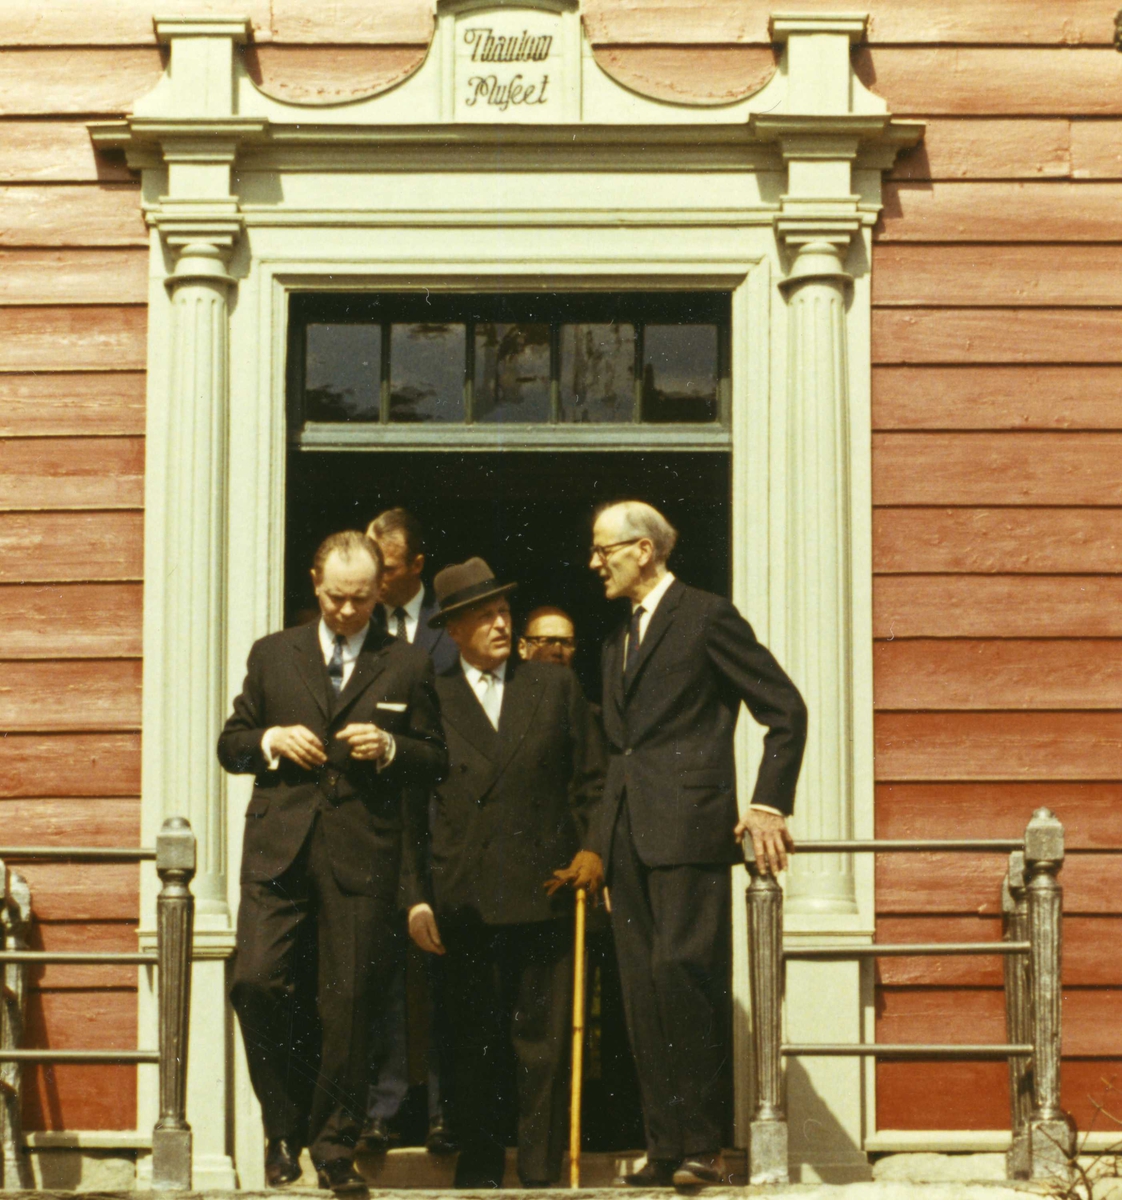 Islands president besøker NF 4/5 1971. Presidenten, Kronprins Harald, Kong Olav og direktør Reidar Kjellberg foran inngangen til Leikanger prestegård/Thaulowmuseet, NF.